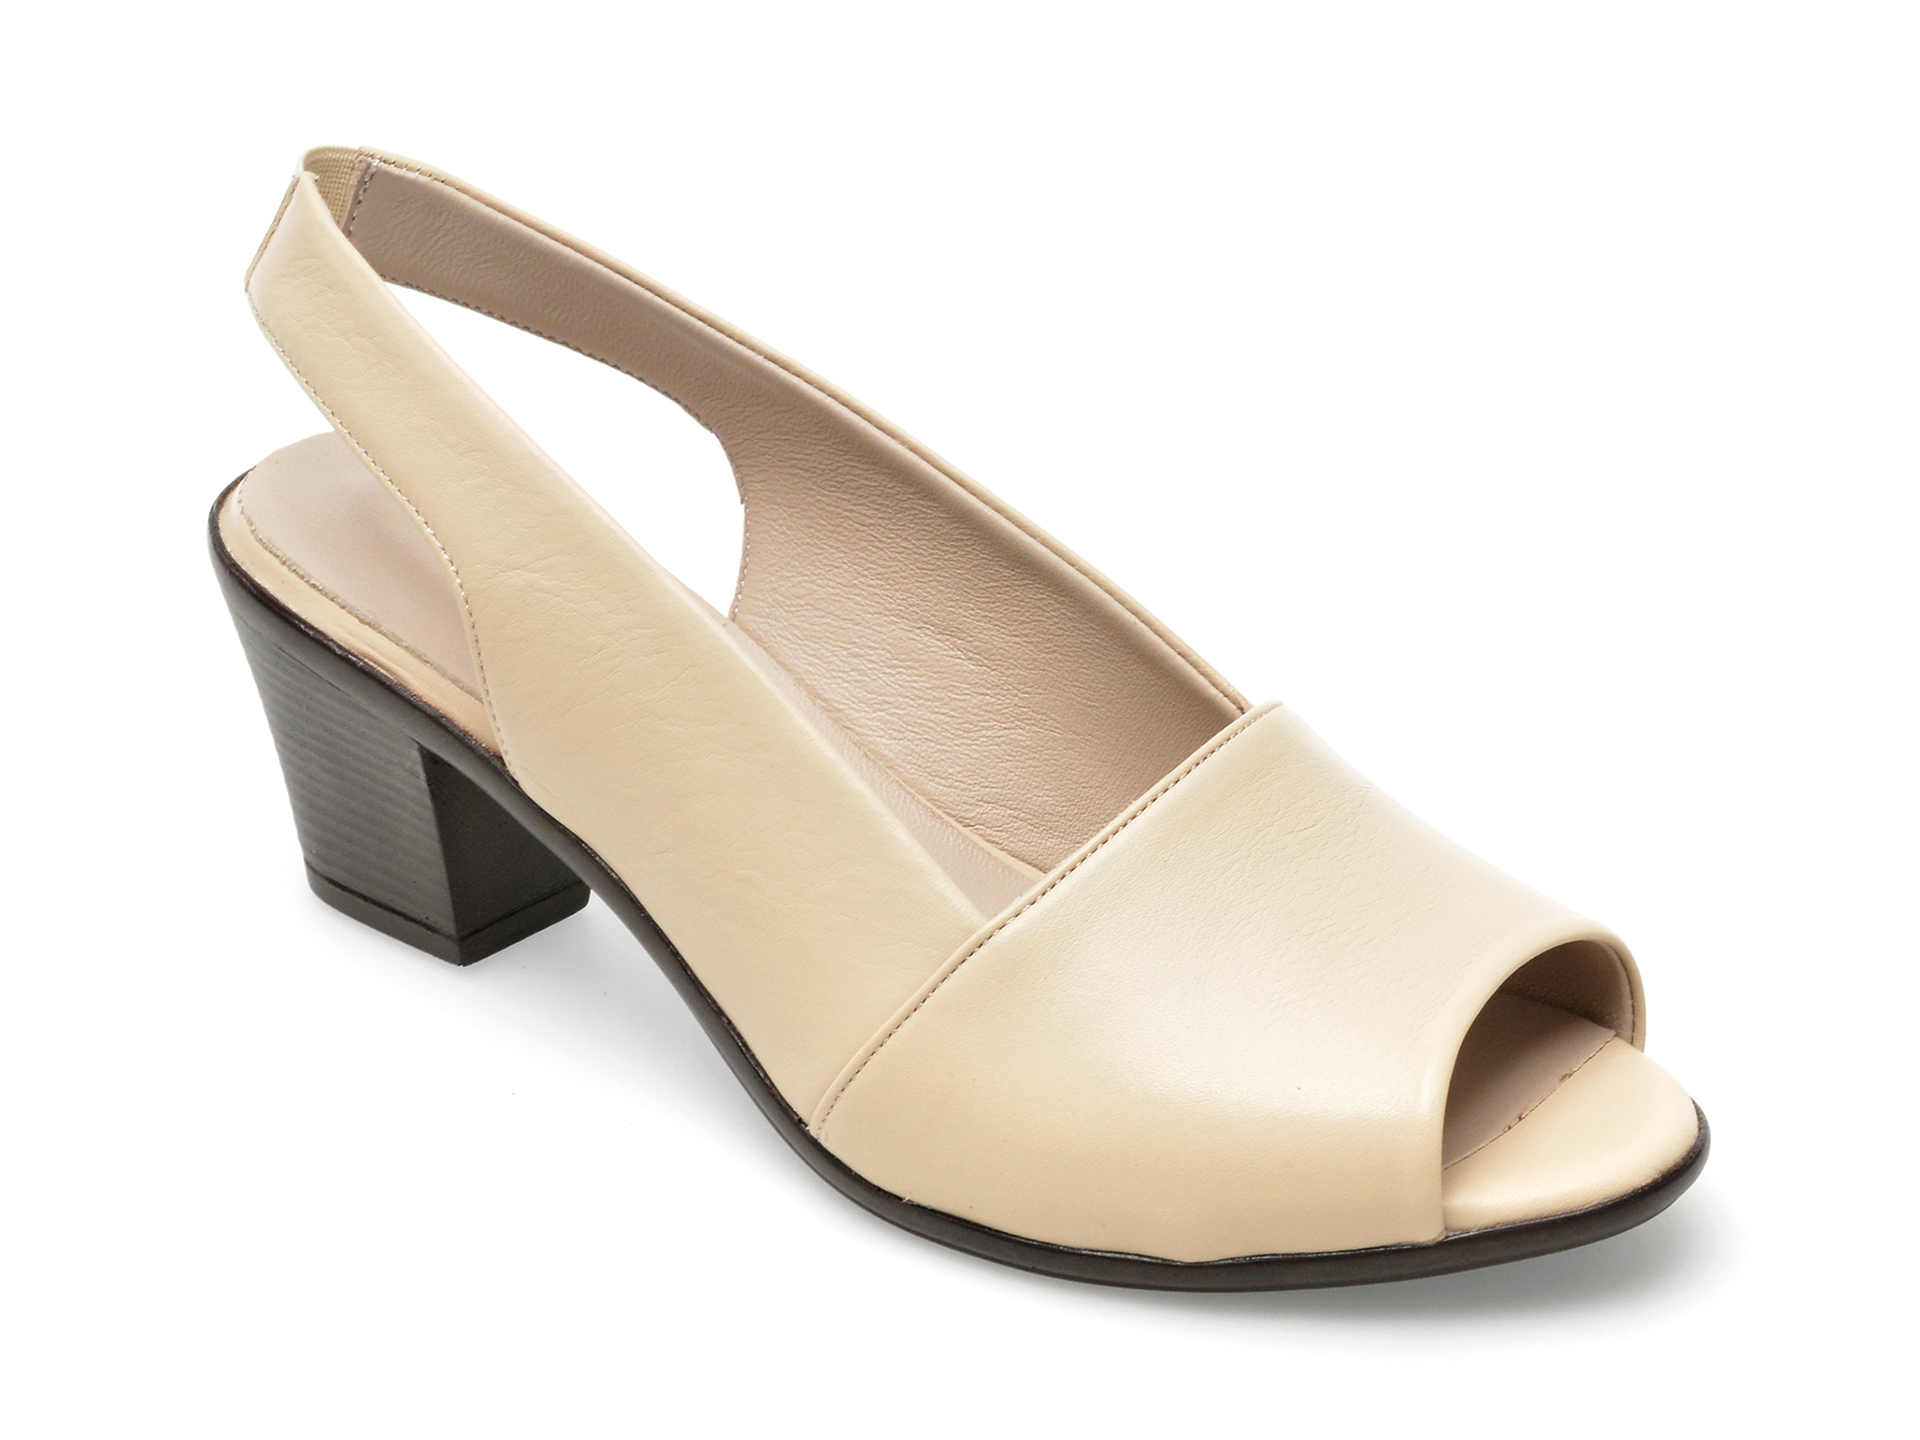 Sandale FLAVIA PASSINI bej, 262, din piele naturala /femei/sandale